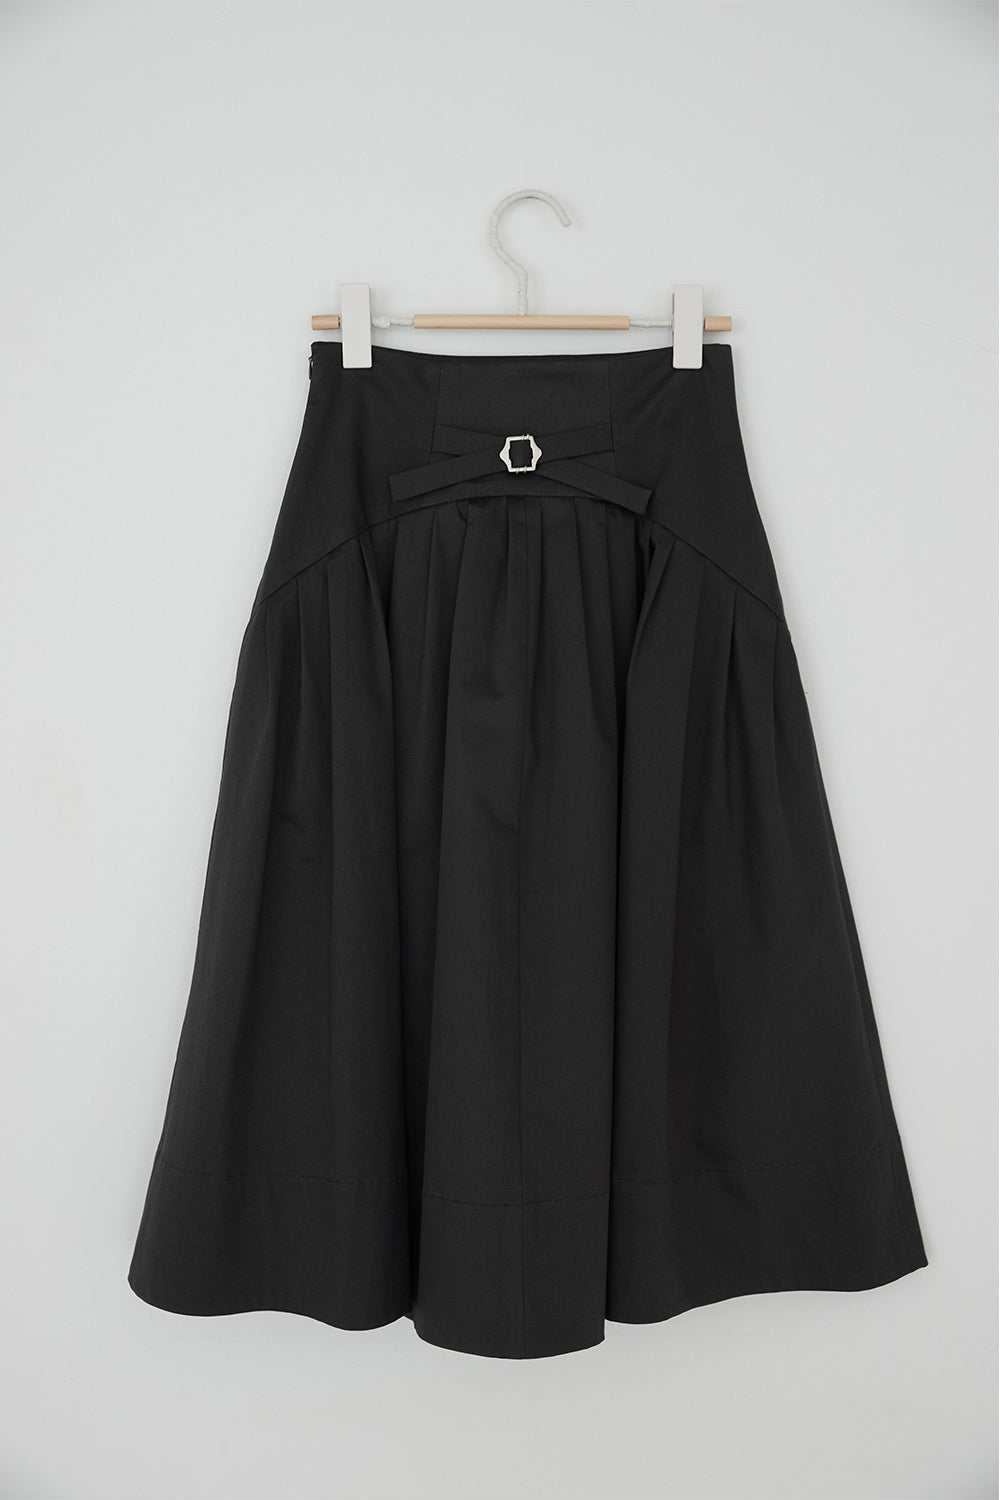 KAIKI Cotton Spandex Flare Skirt Gray